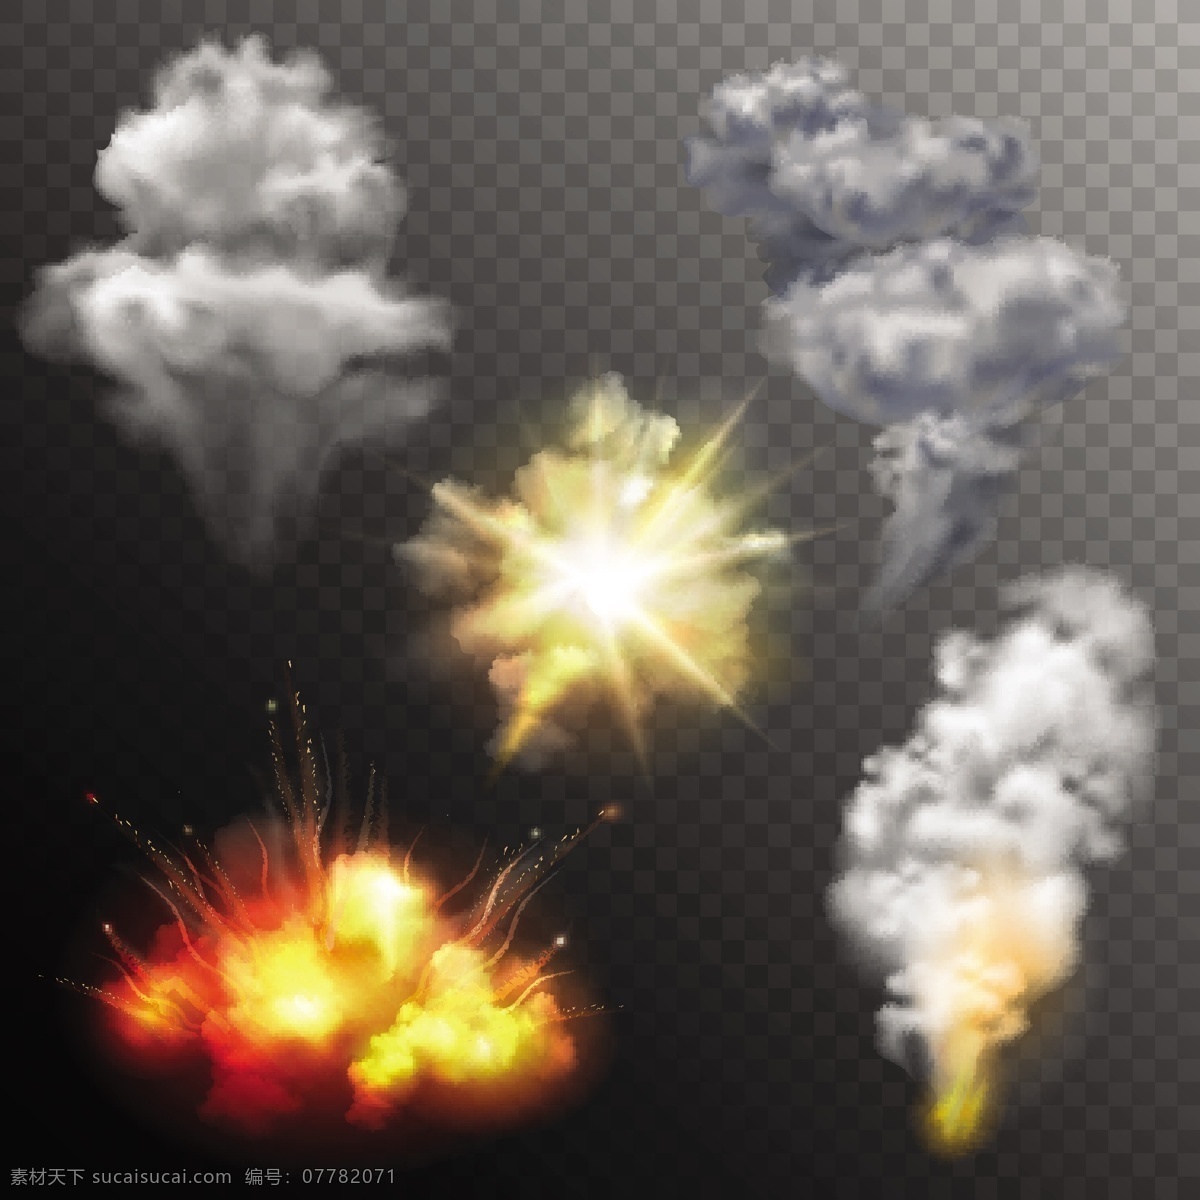 爆炸烟雾 核弹 爆炸 特效 氢弹 原子弹 蘑菇云 烟雾 硝烟 燃烧 炸弹 爆破 浓烟 火焰